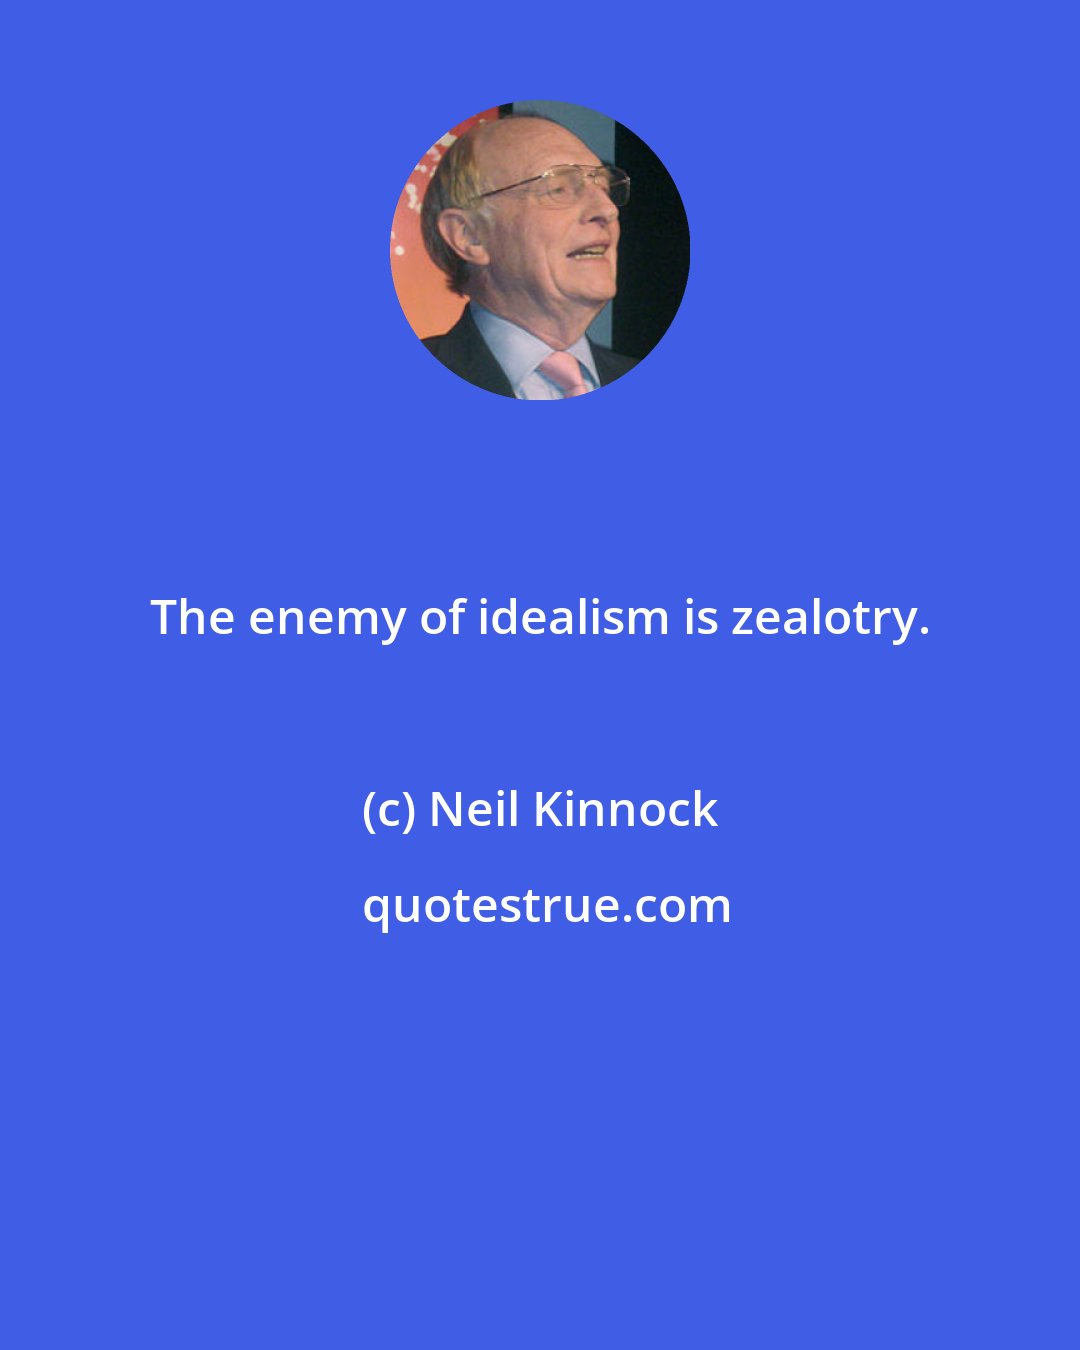 Neil Kinnock: The enemy of idealism is zealotry.